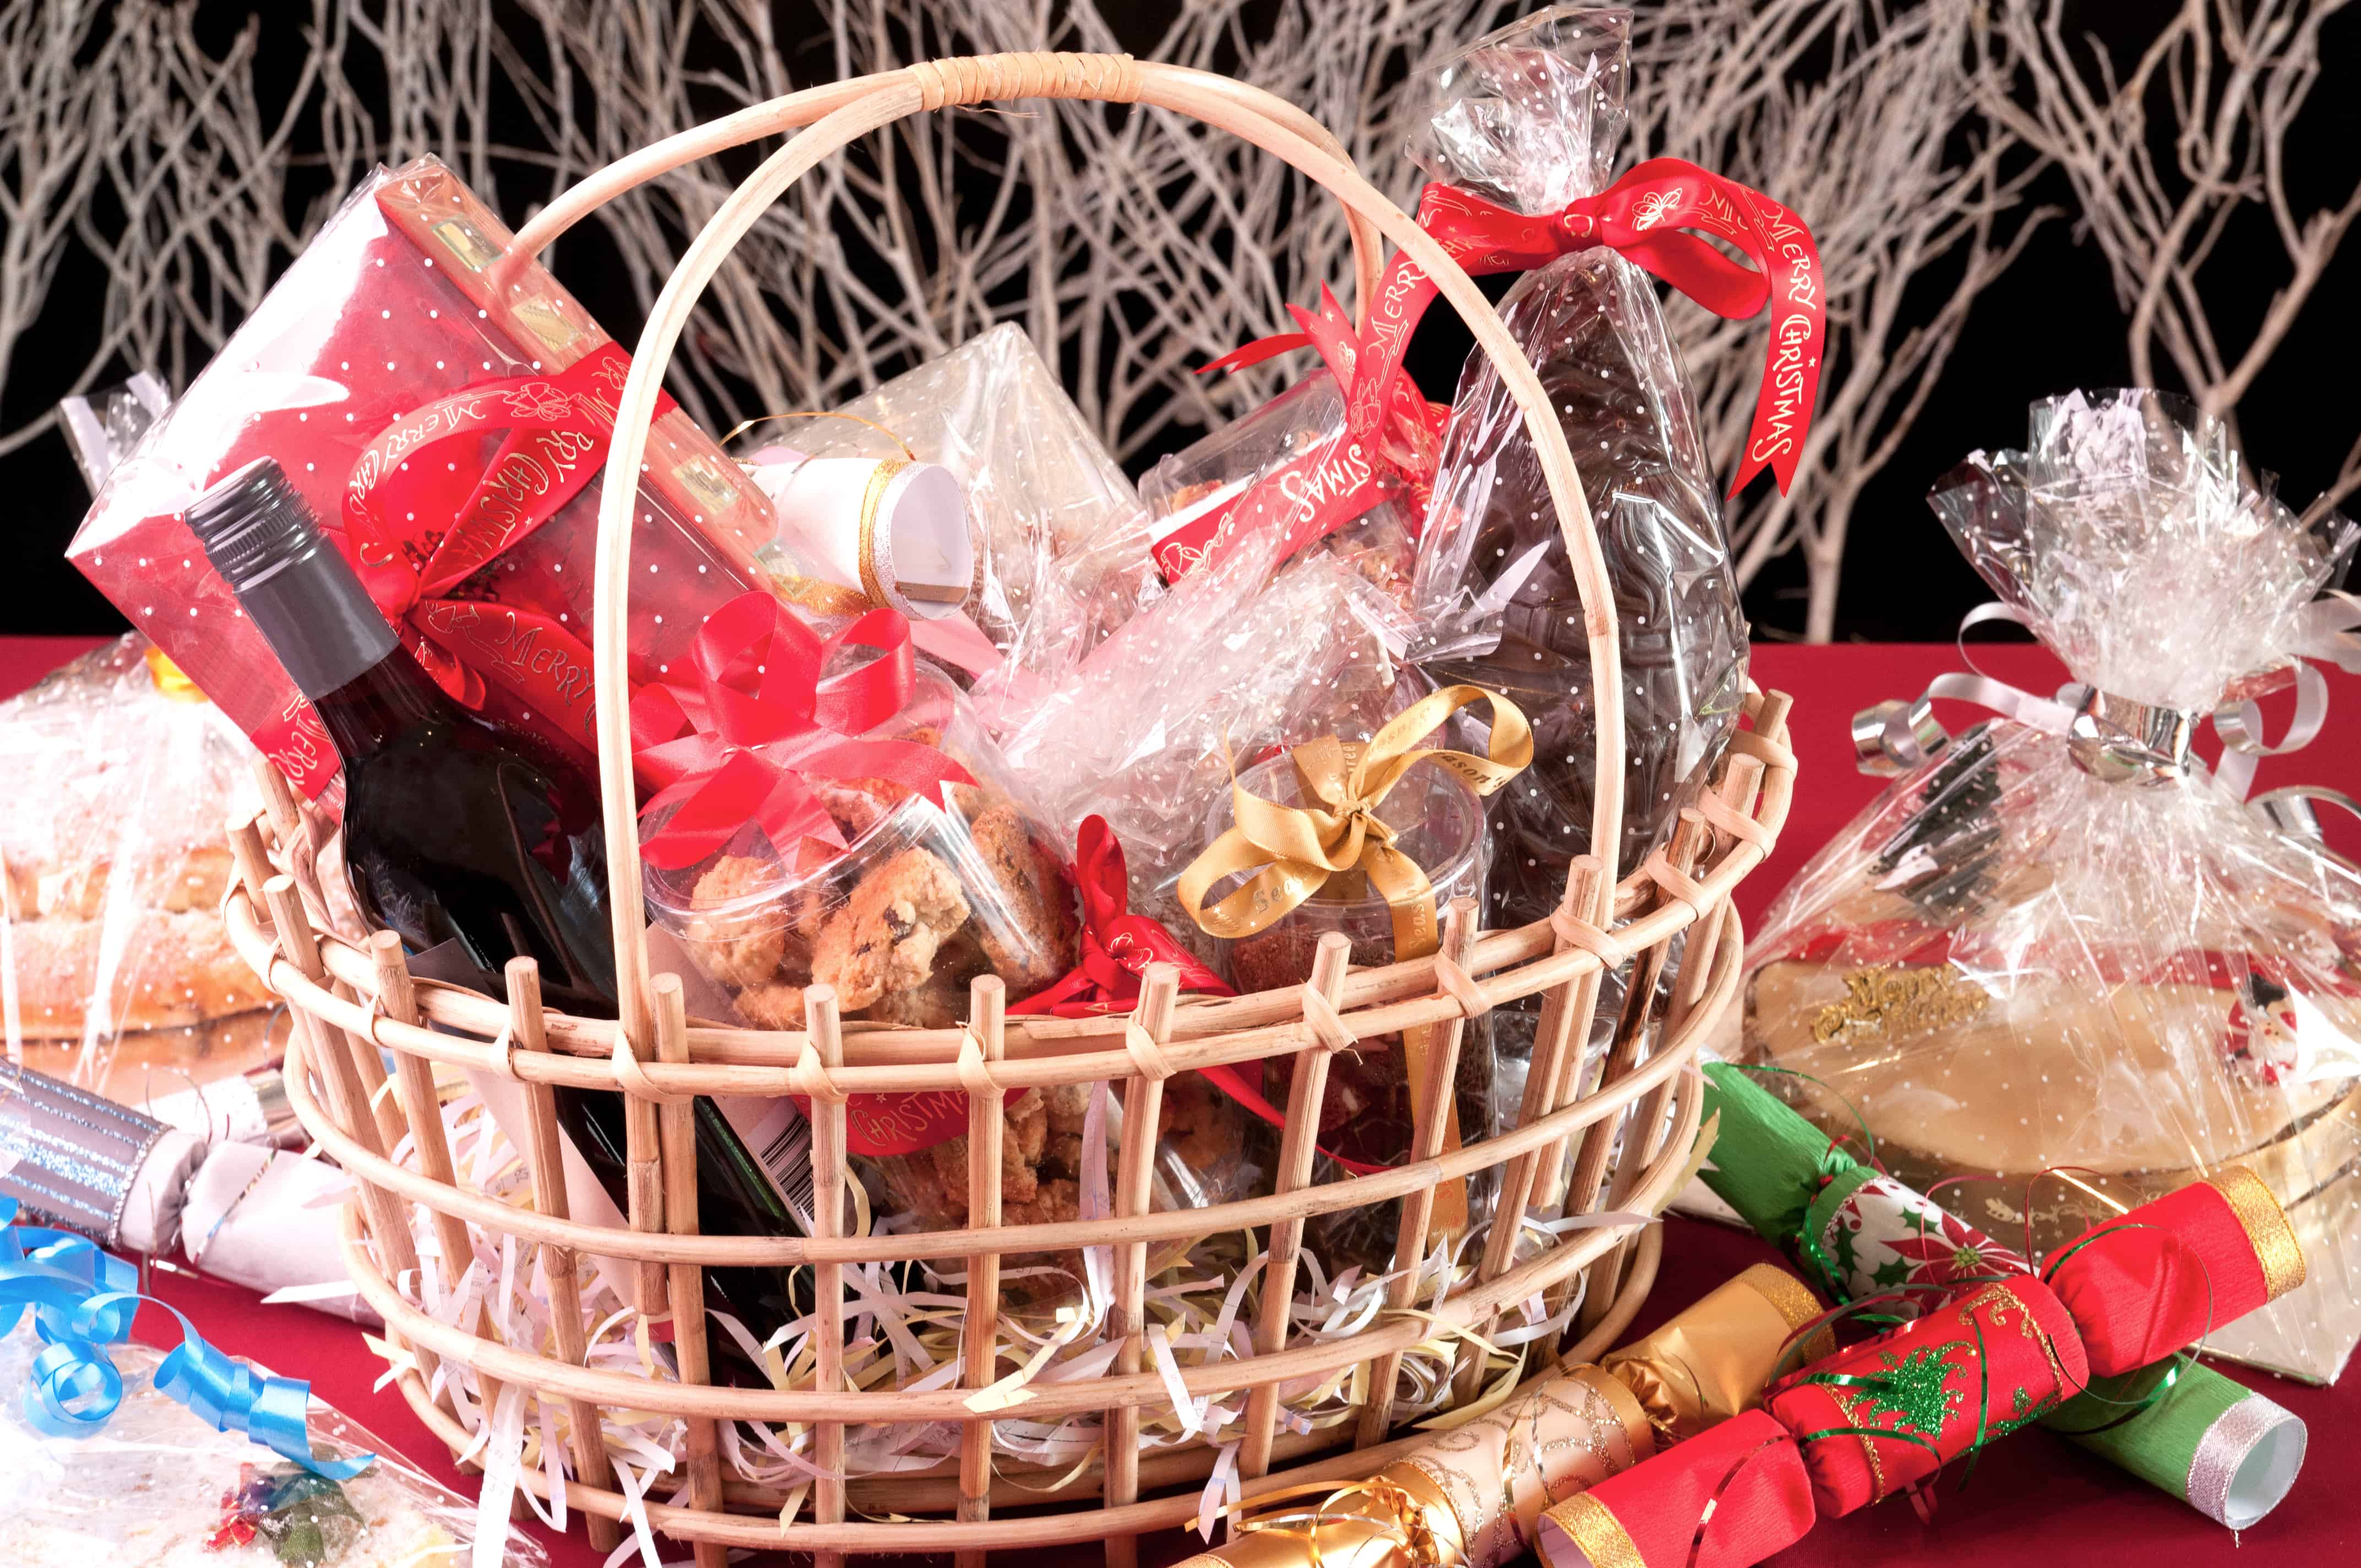 Cestas de regalo gourmet Cesta de regalo de nueces y salchichas Gourmet  Cestas de regalo navideñas Regalos corporativos Regalos para nuevos